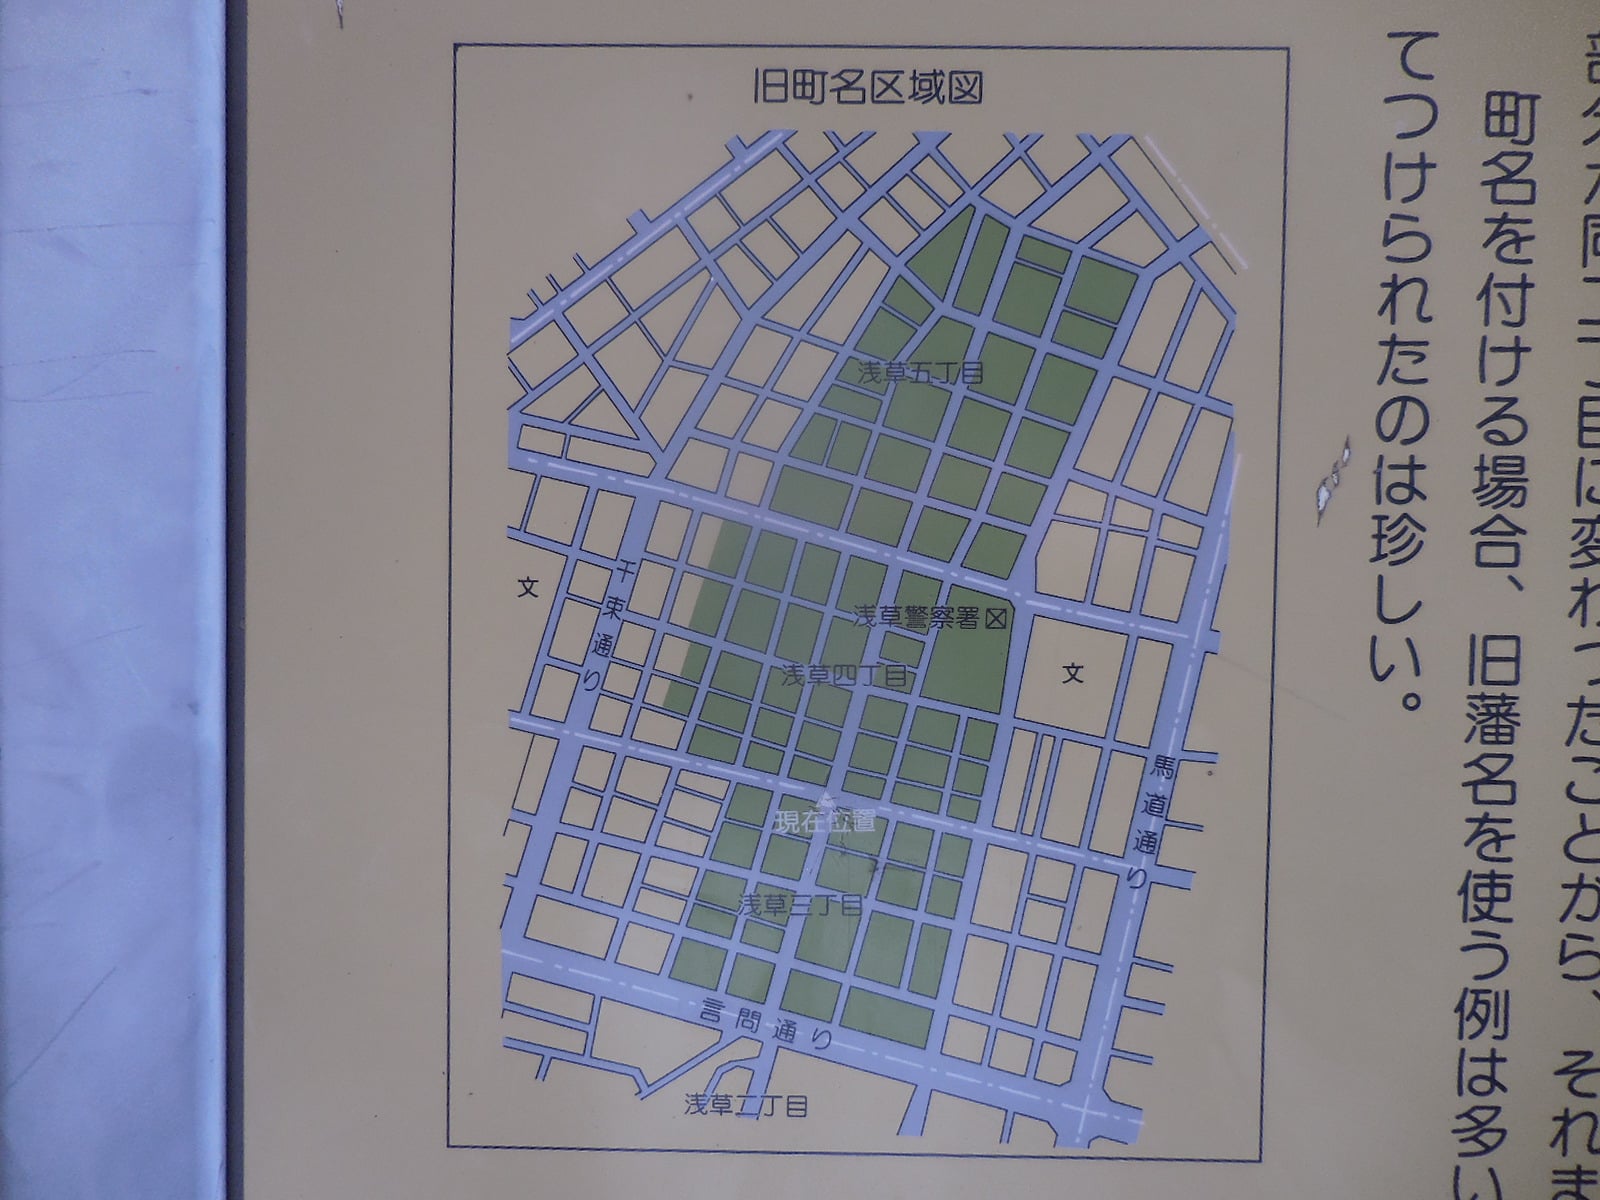 現在の地図にあてはめた浅草象潟町・同象潟一、二、三丁目の区域図